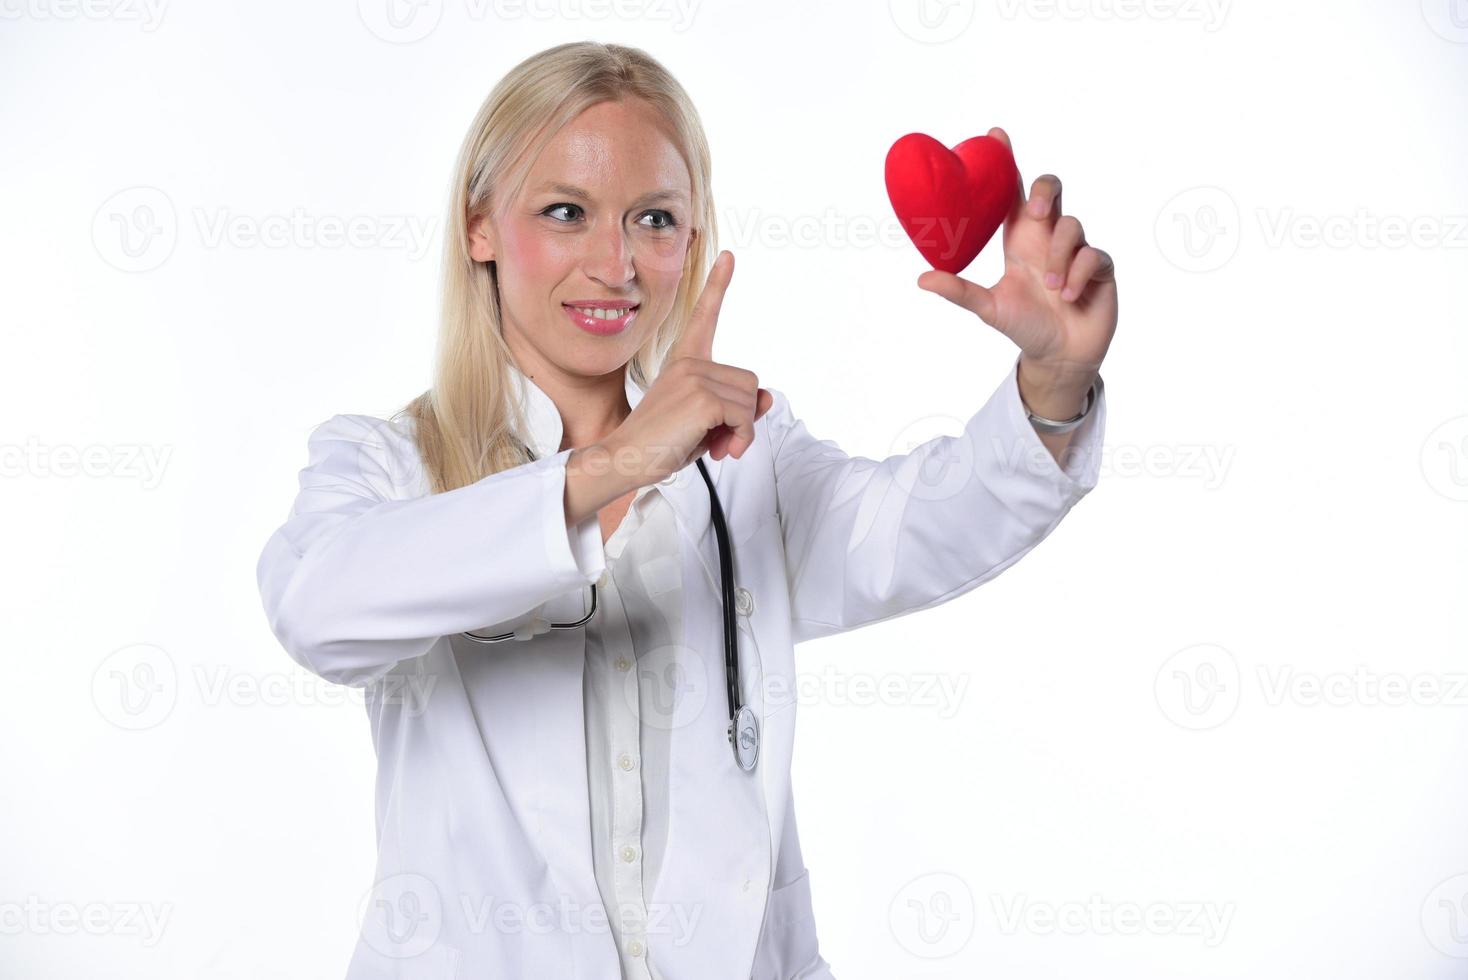 mãos de cardio cirurgião cardíaco segurando a forma de coração vermelho sobre fundo branco foto